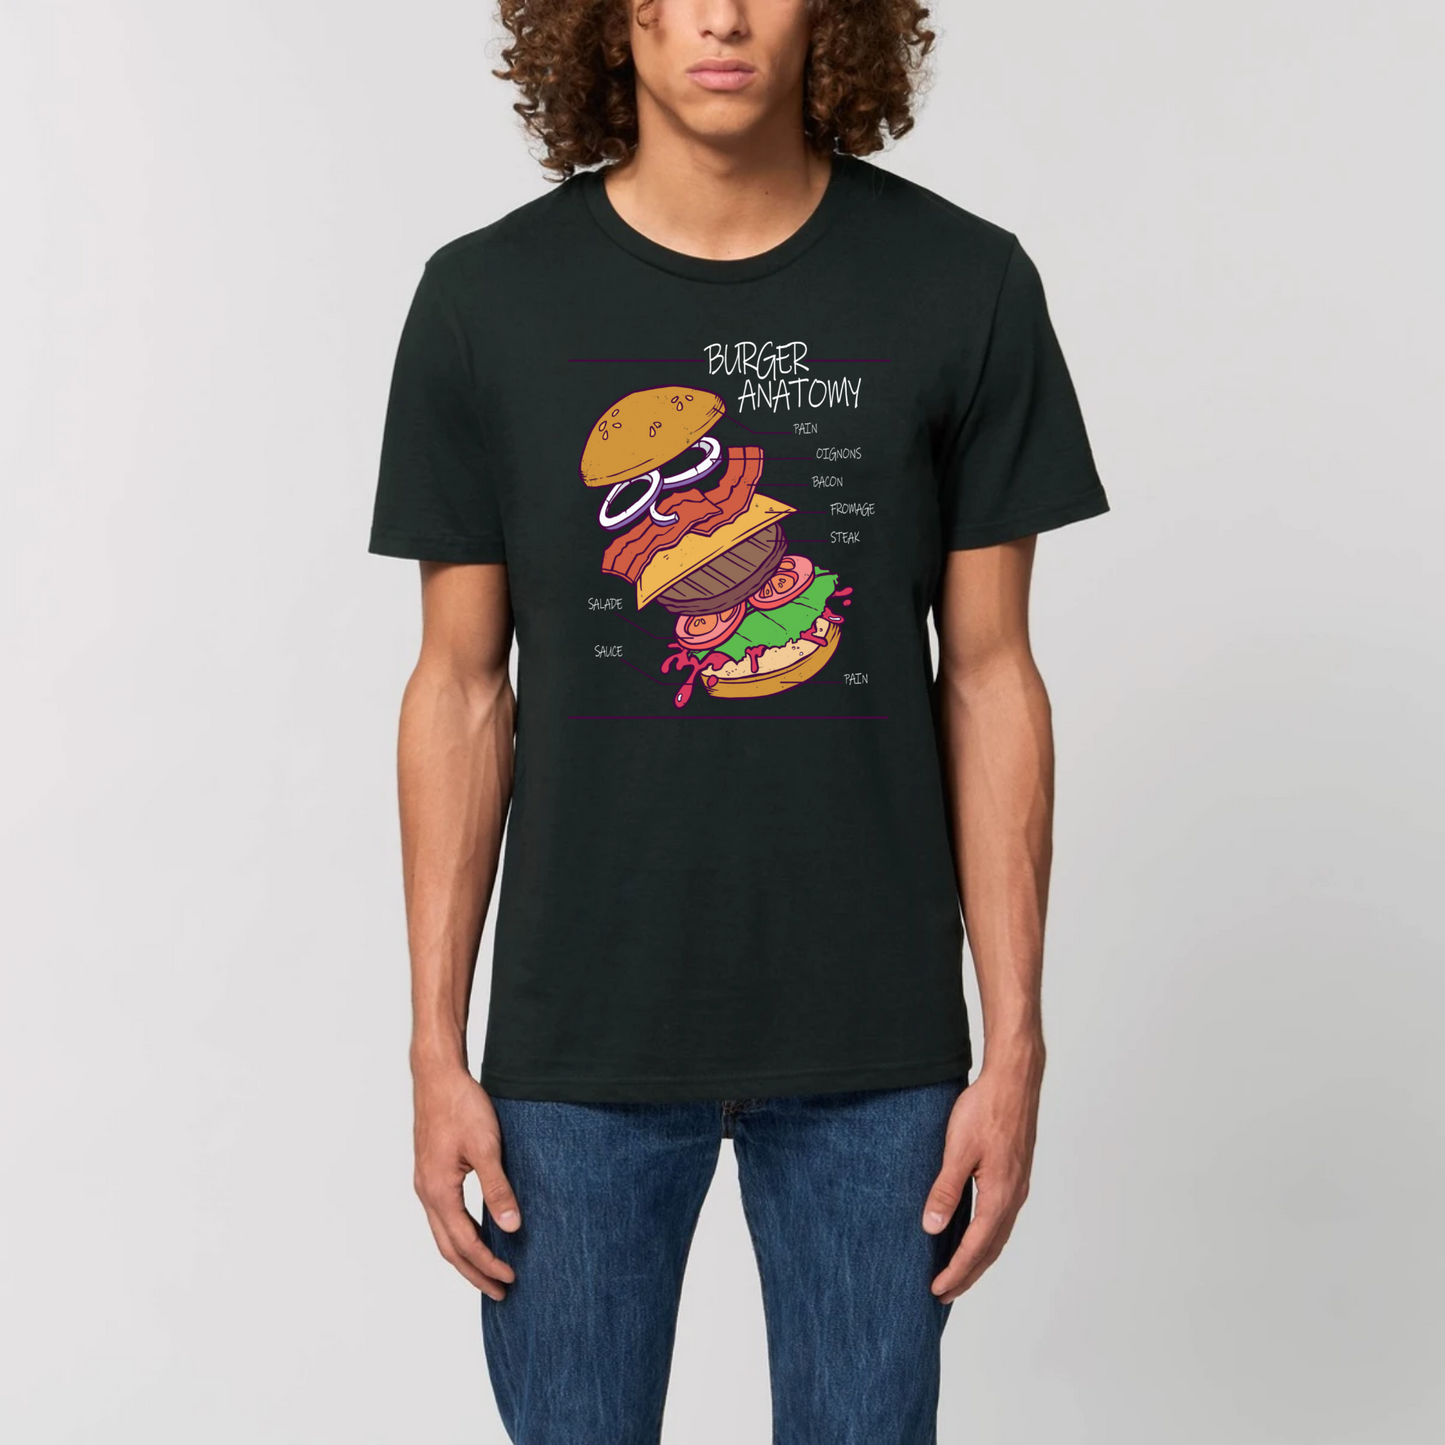 t-shirt burger anatomy en coton bio pour homme de T-French, t-shirt homme burger, t-shirt burger, tee shirt en coton bio homme, t-shirt homme humour, t-shirt humour nourriture, Noir